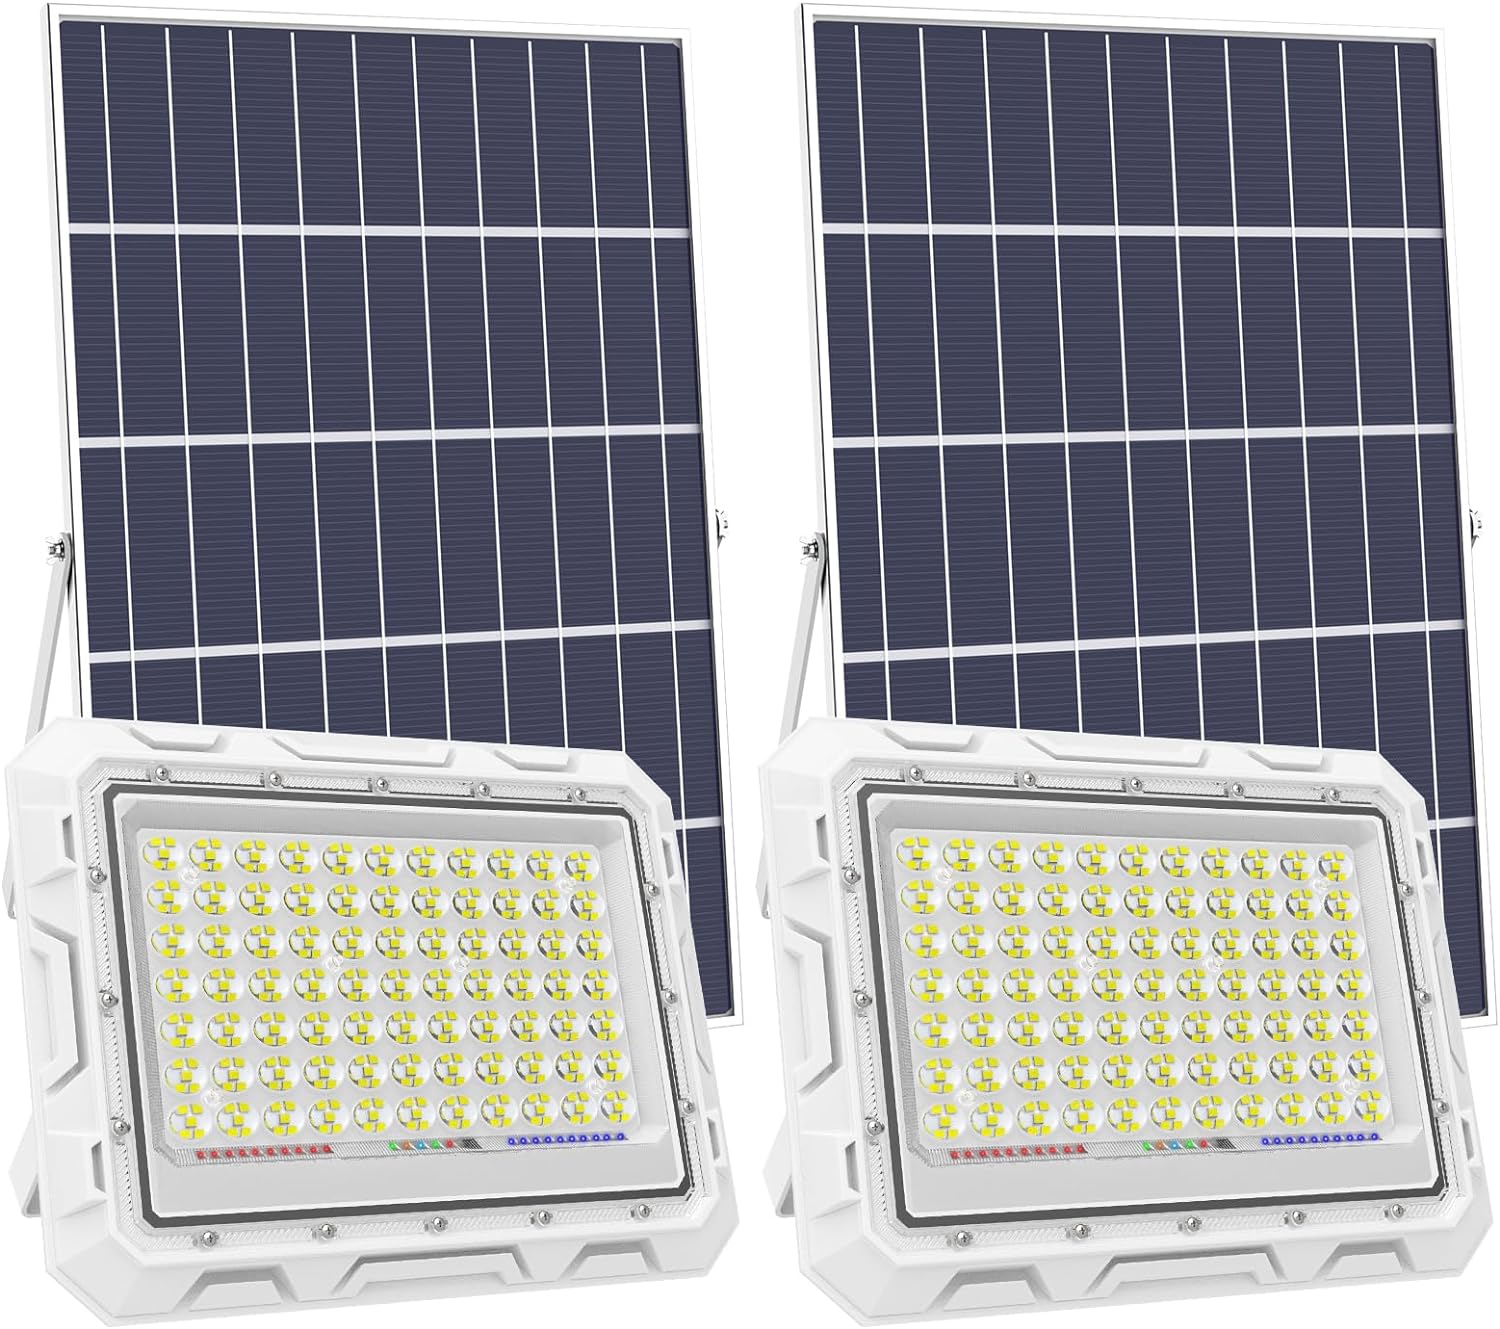 Hykoont ZZ060 600W LED Solar Flood Lights, 30000 Lumens 2 Pack